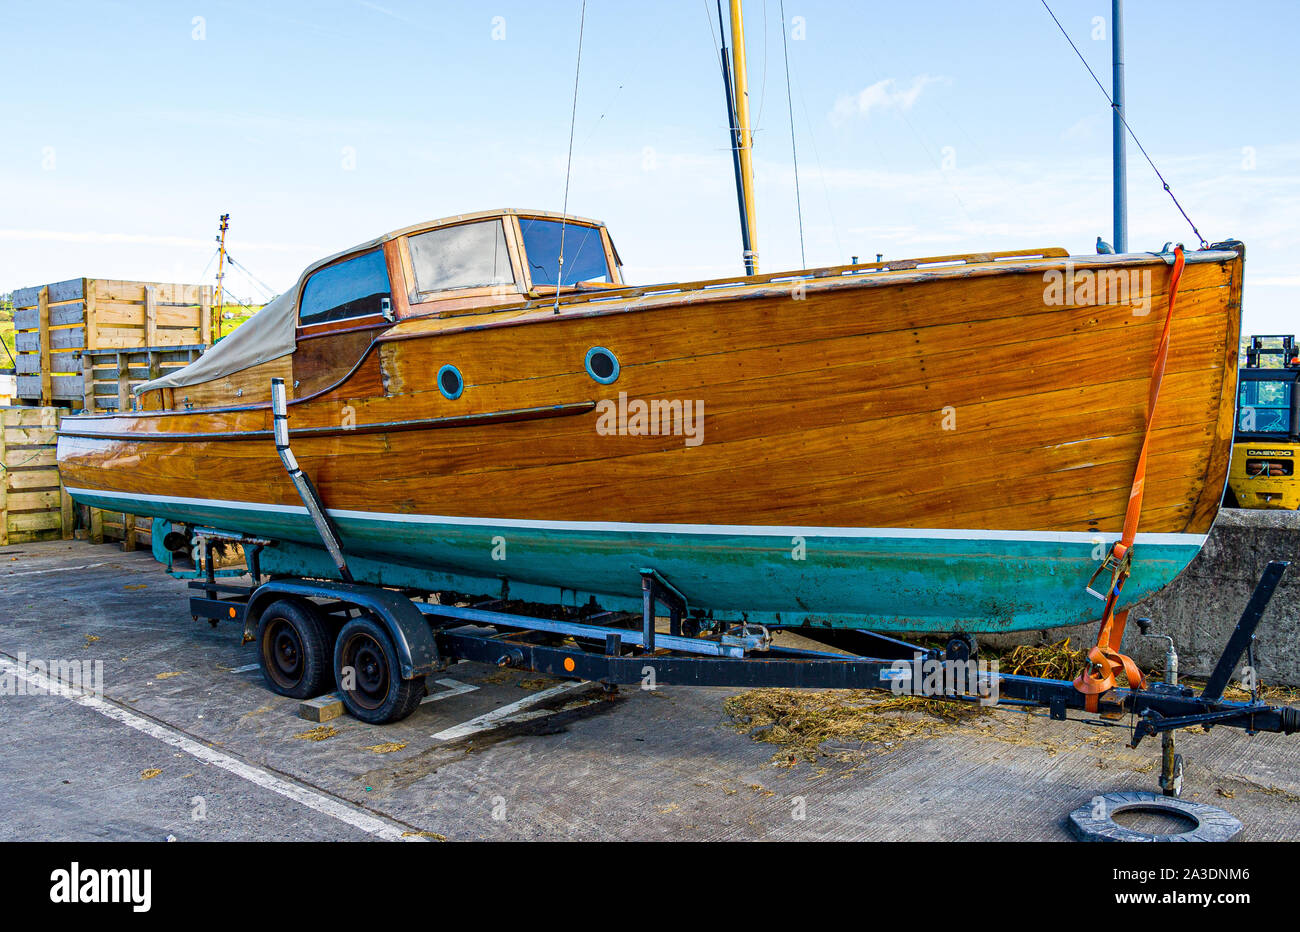 Platelage en bois verni sur une coque de bateau construit en bois franc Banque D'Images